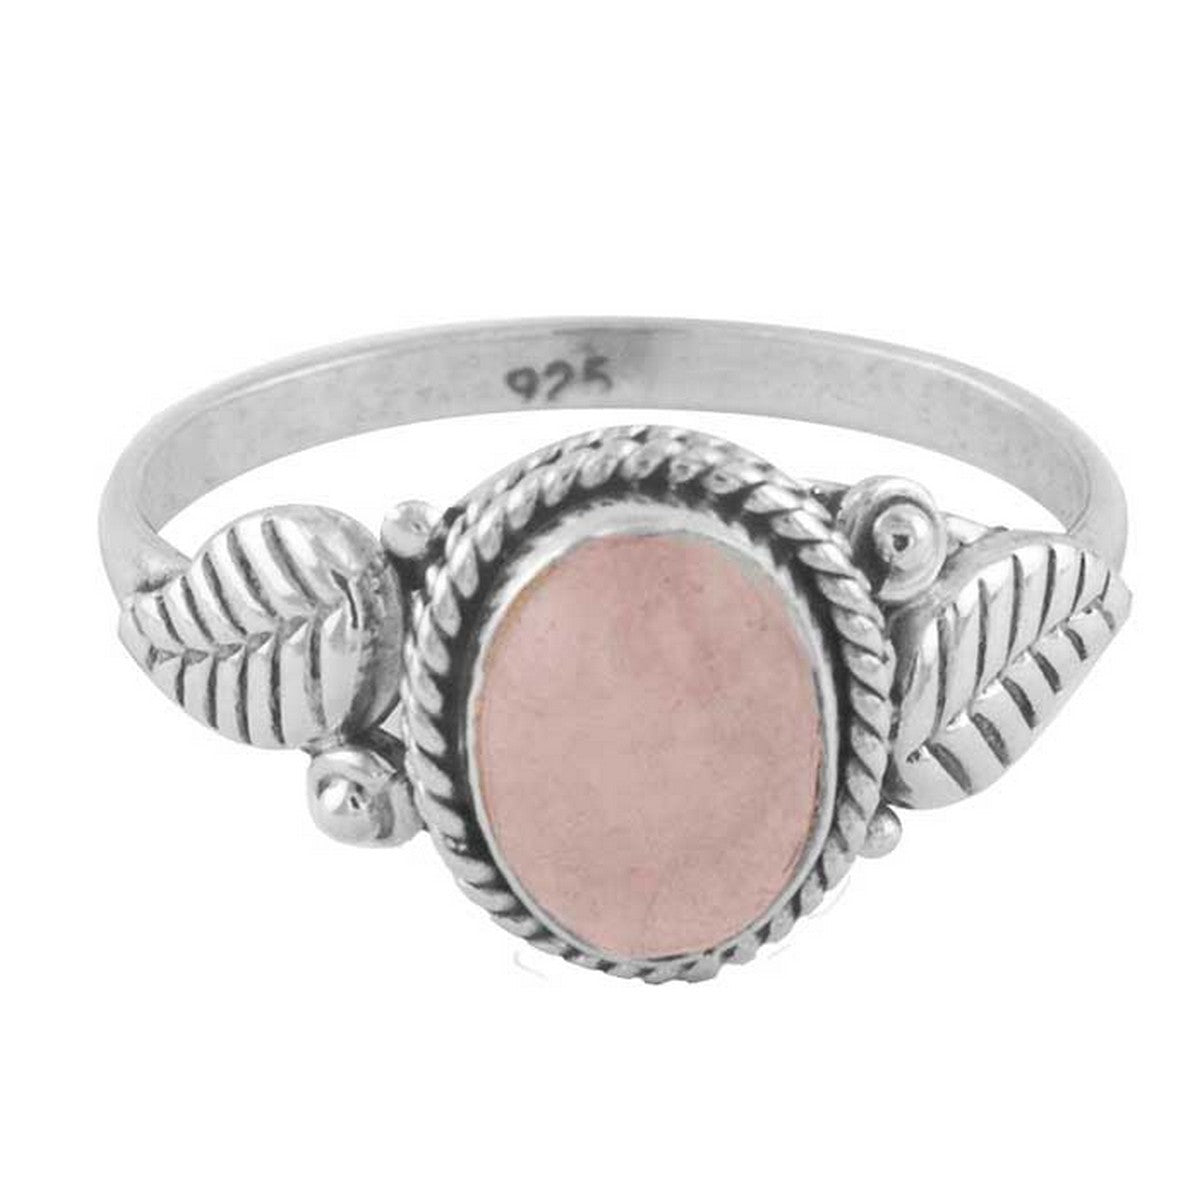 Laural | Ring 925 zilver met rozenkwarts